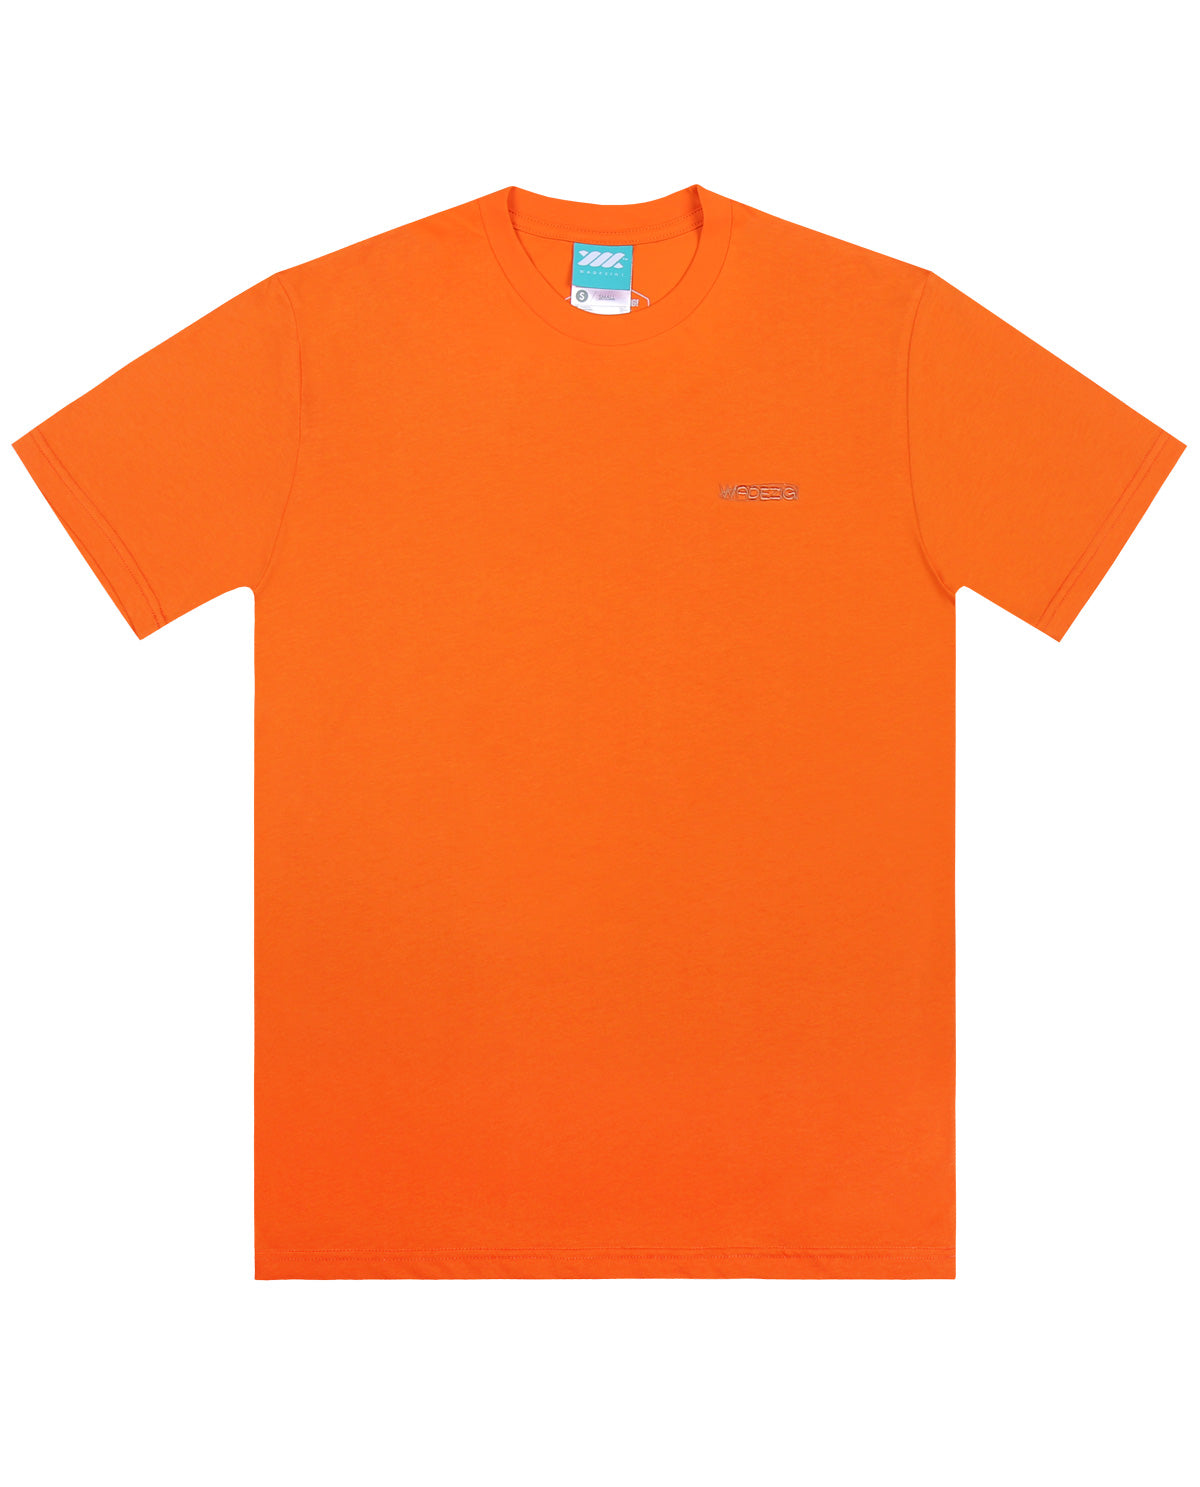 Wadezig! T-Shirt - Eclipse Orange